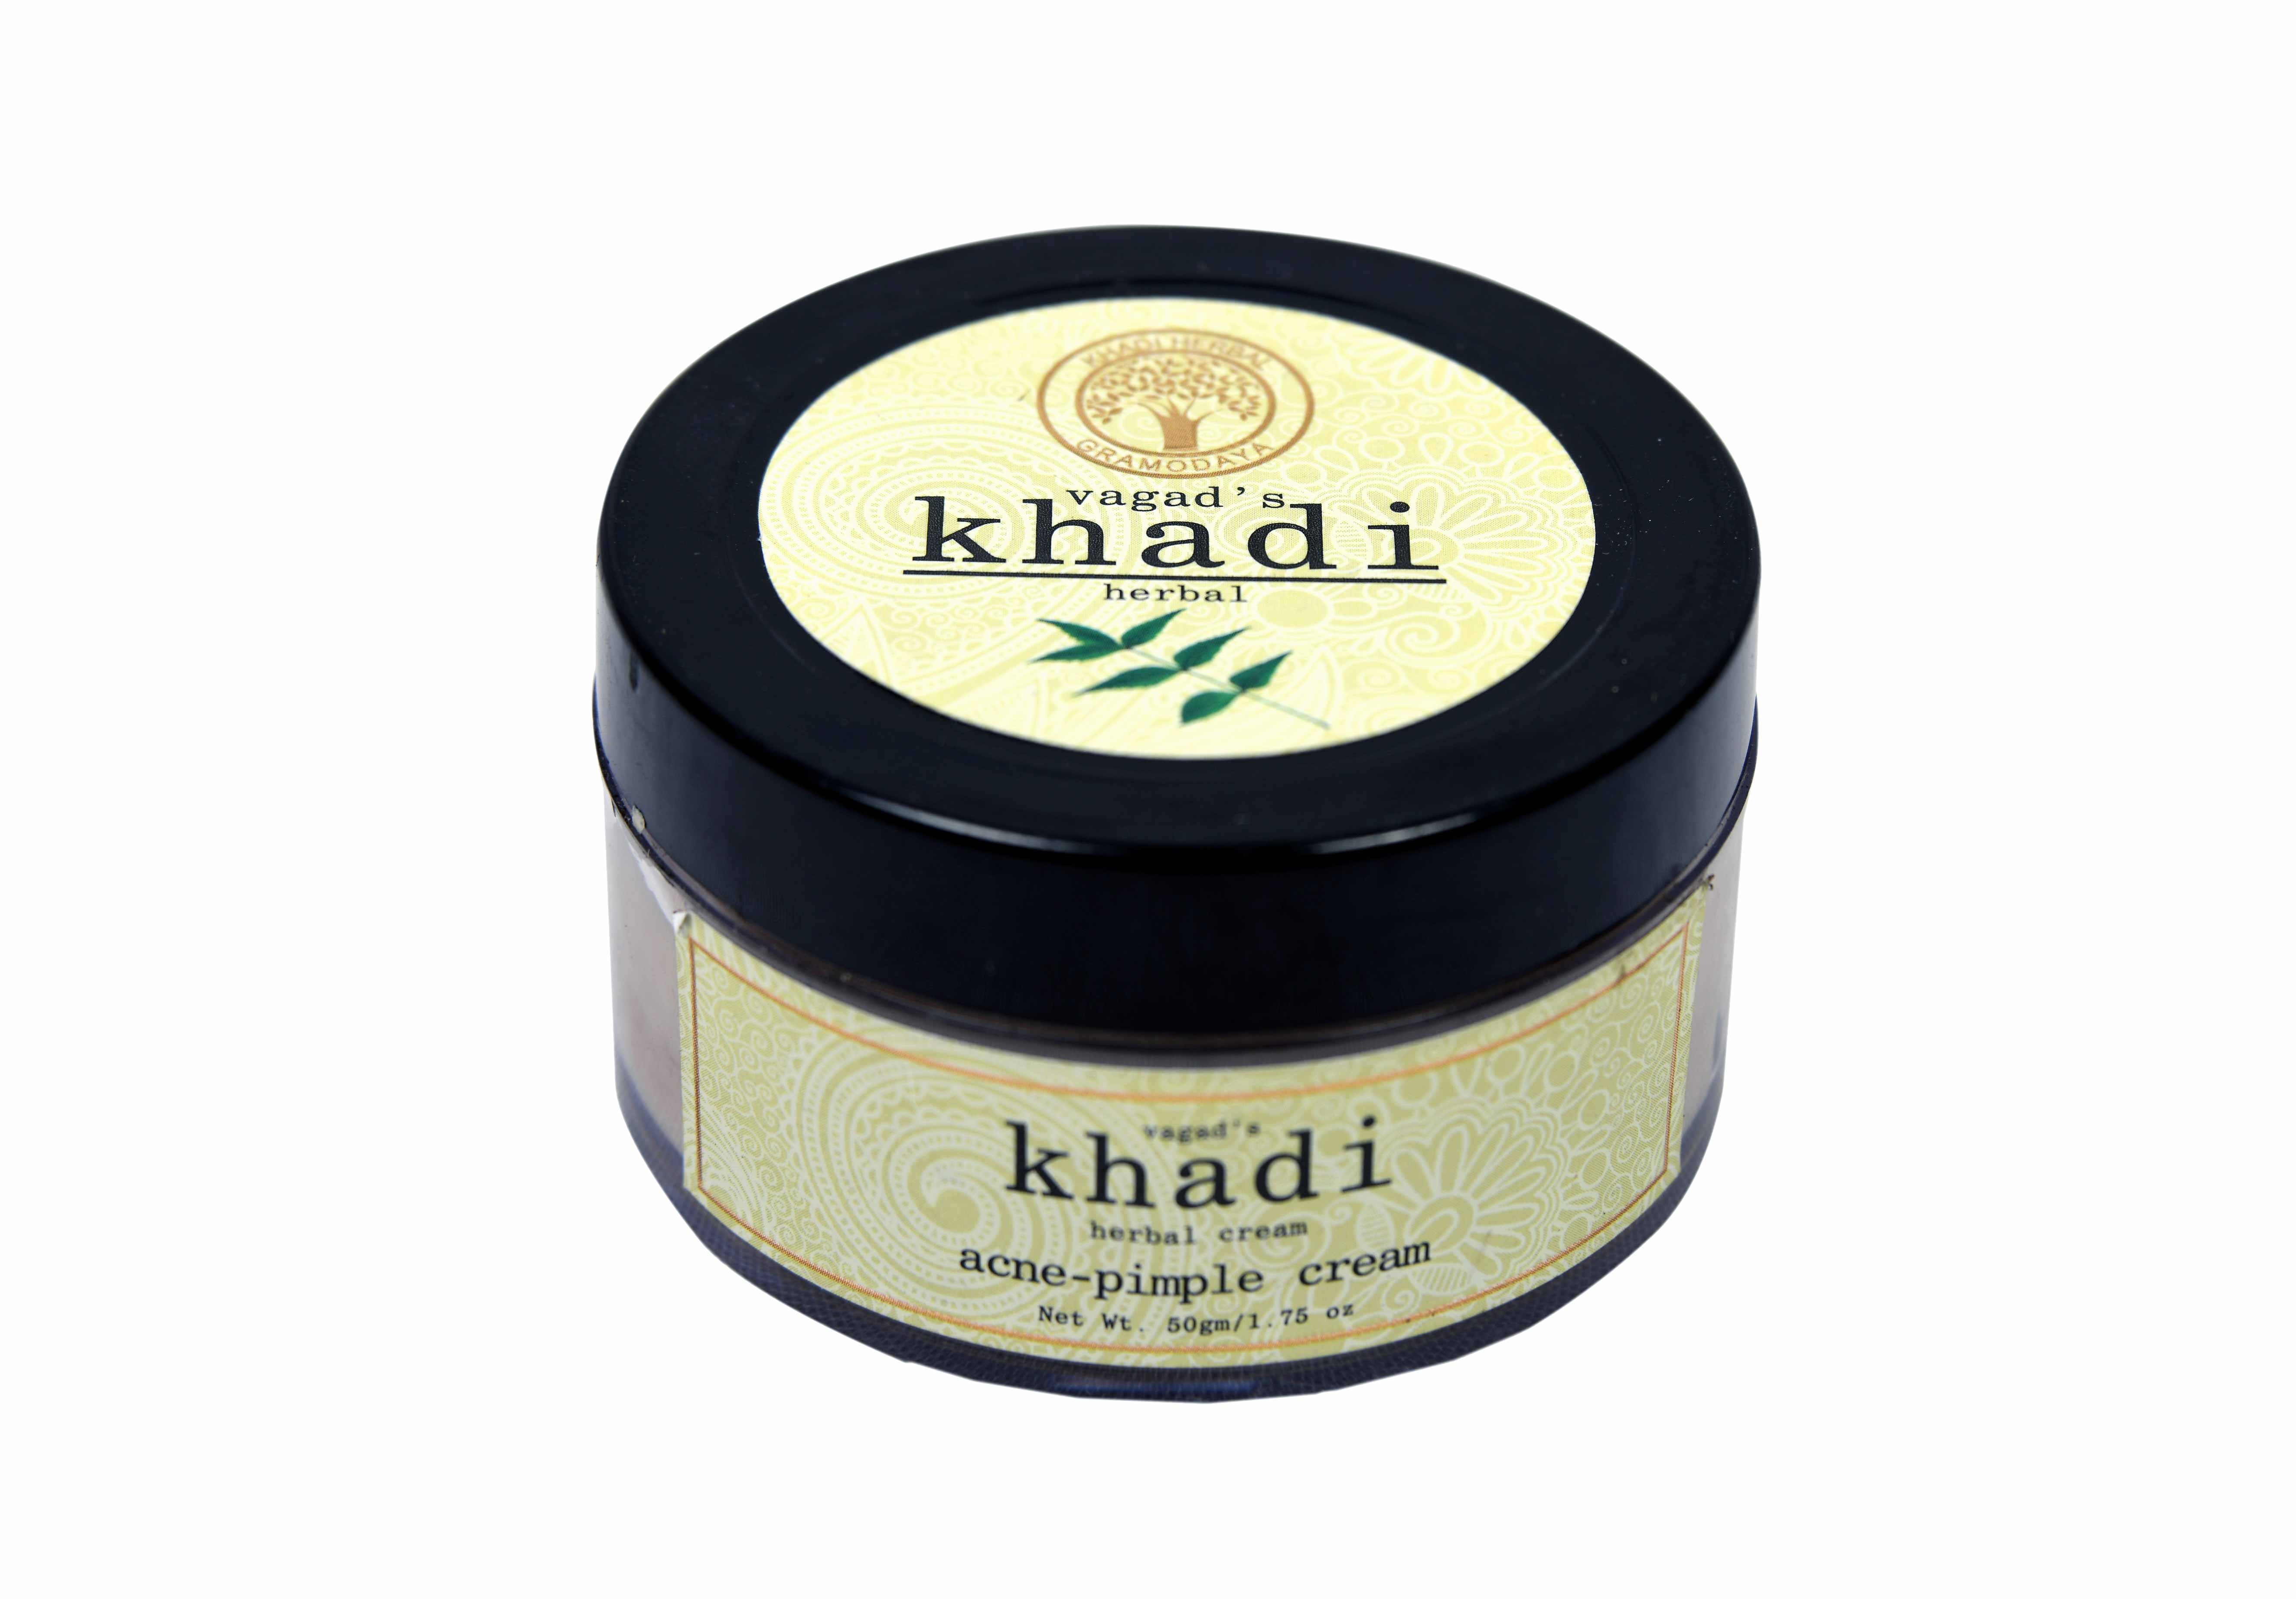 Buy Vagad's Khadi Acne Pimple Cream at Best Price Online